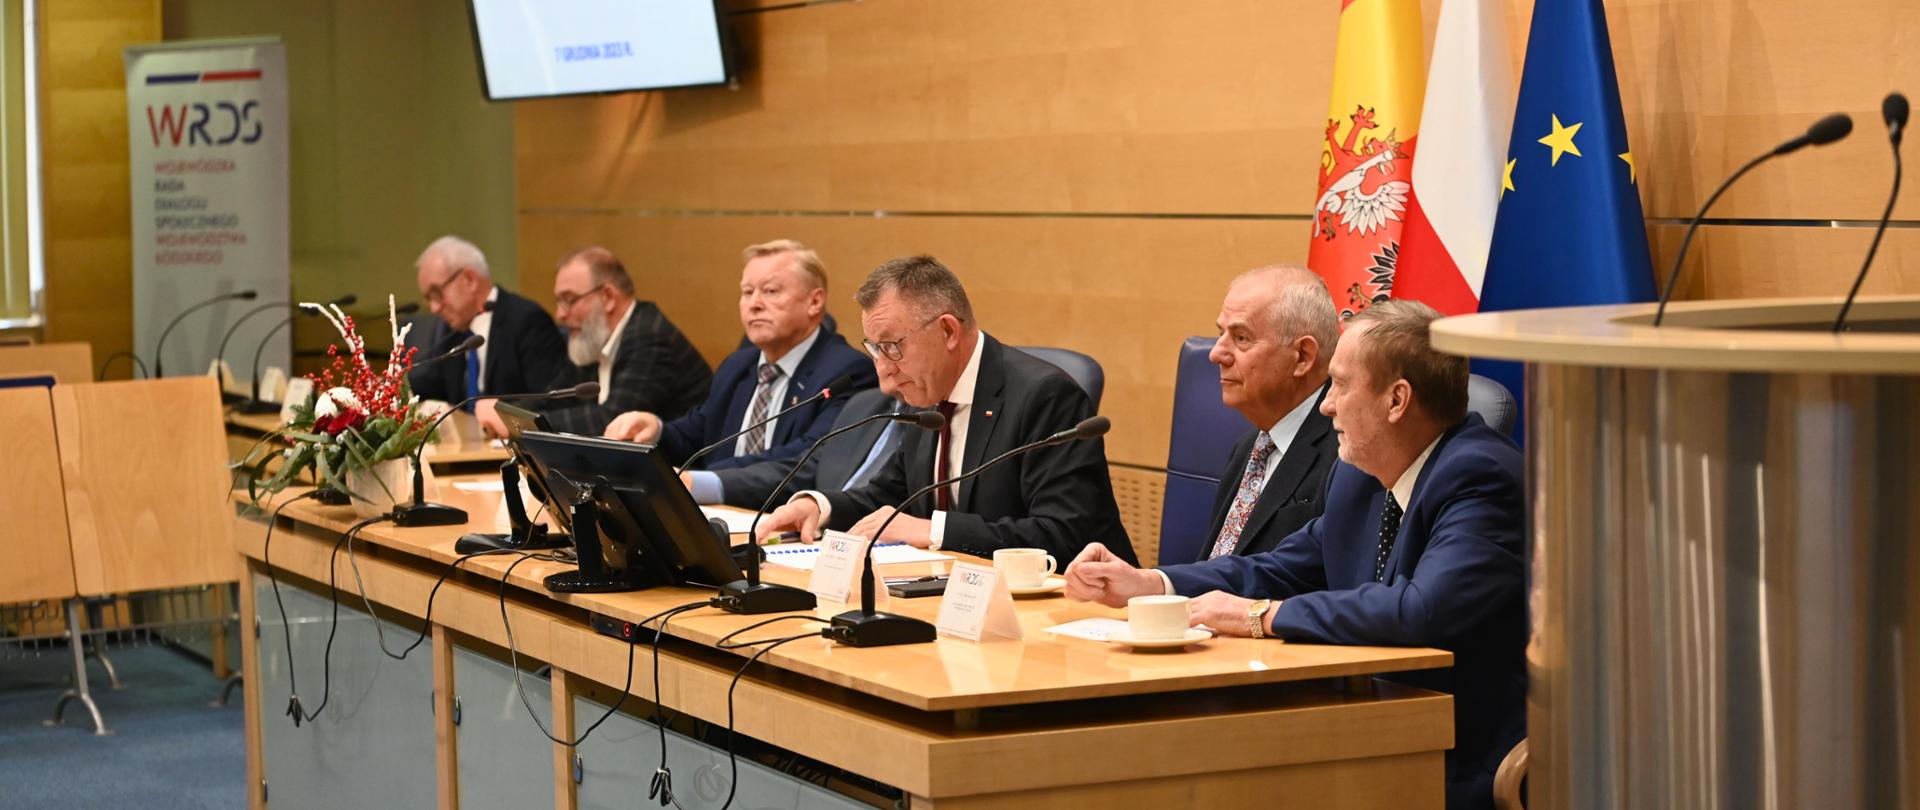 Posiedzenie plenarne Wojewódzkiej Rady Dialogu Społecznego w Sali Obrad Sejmiku Województwa Łódzkiego. 